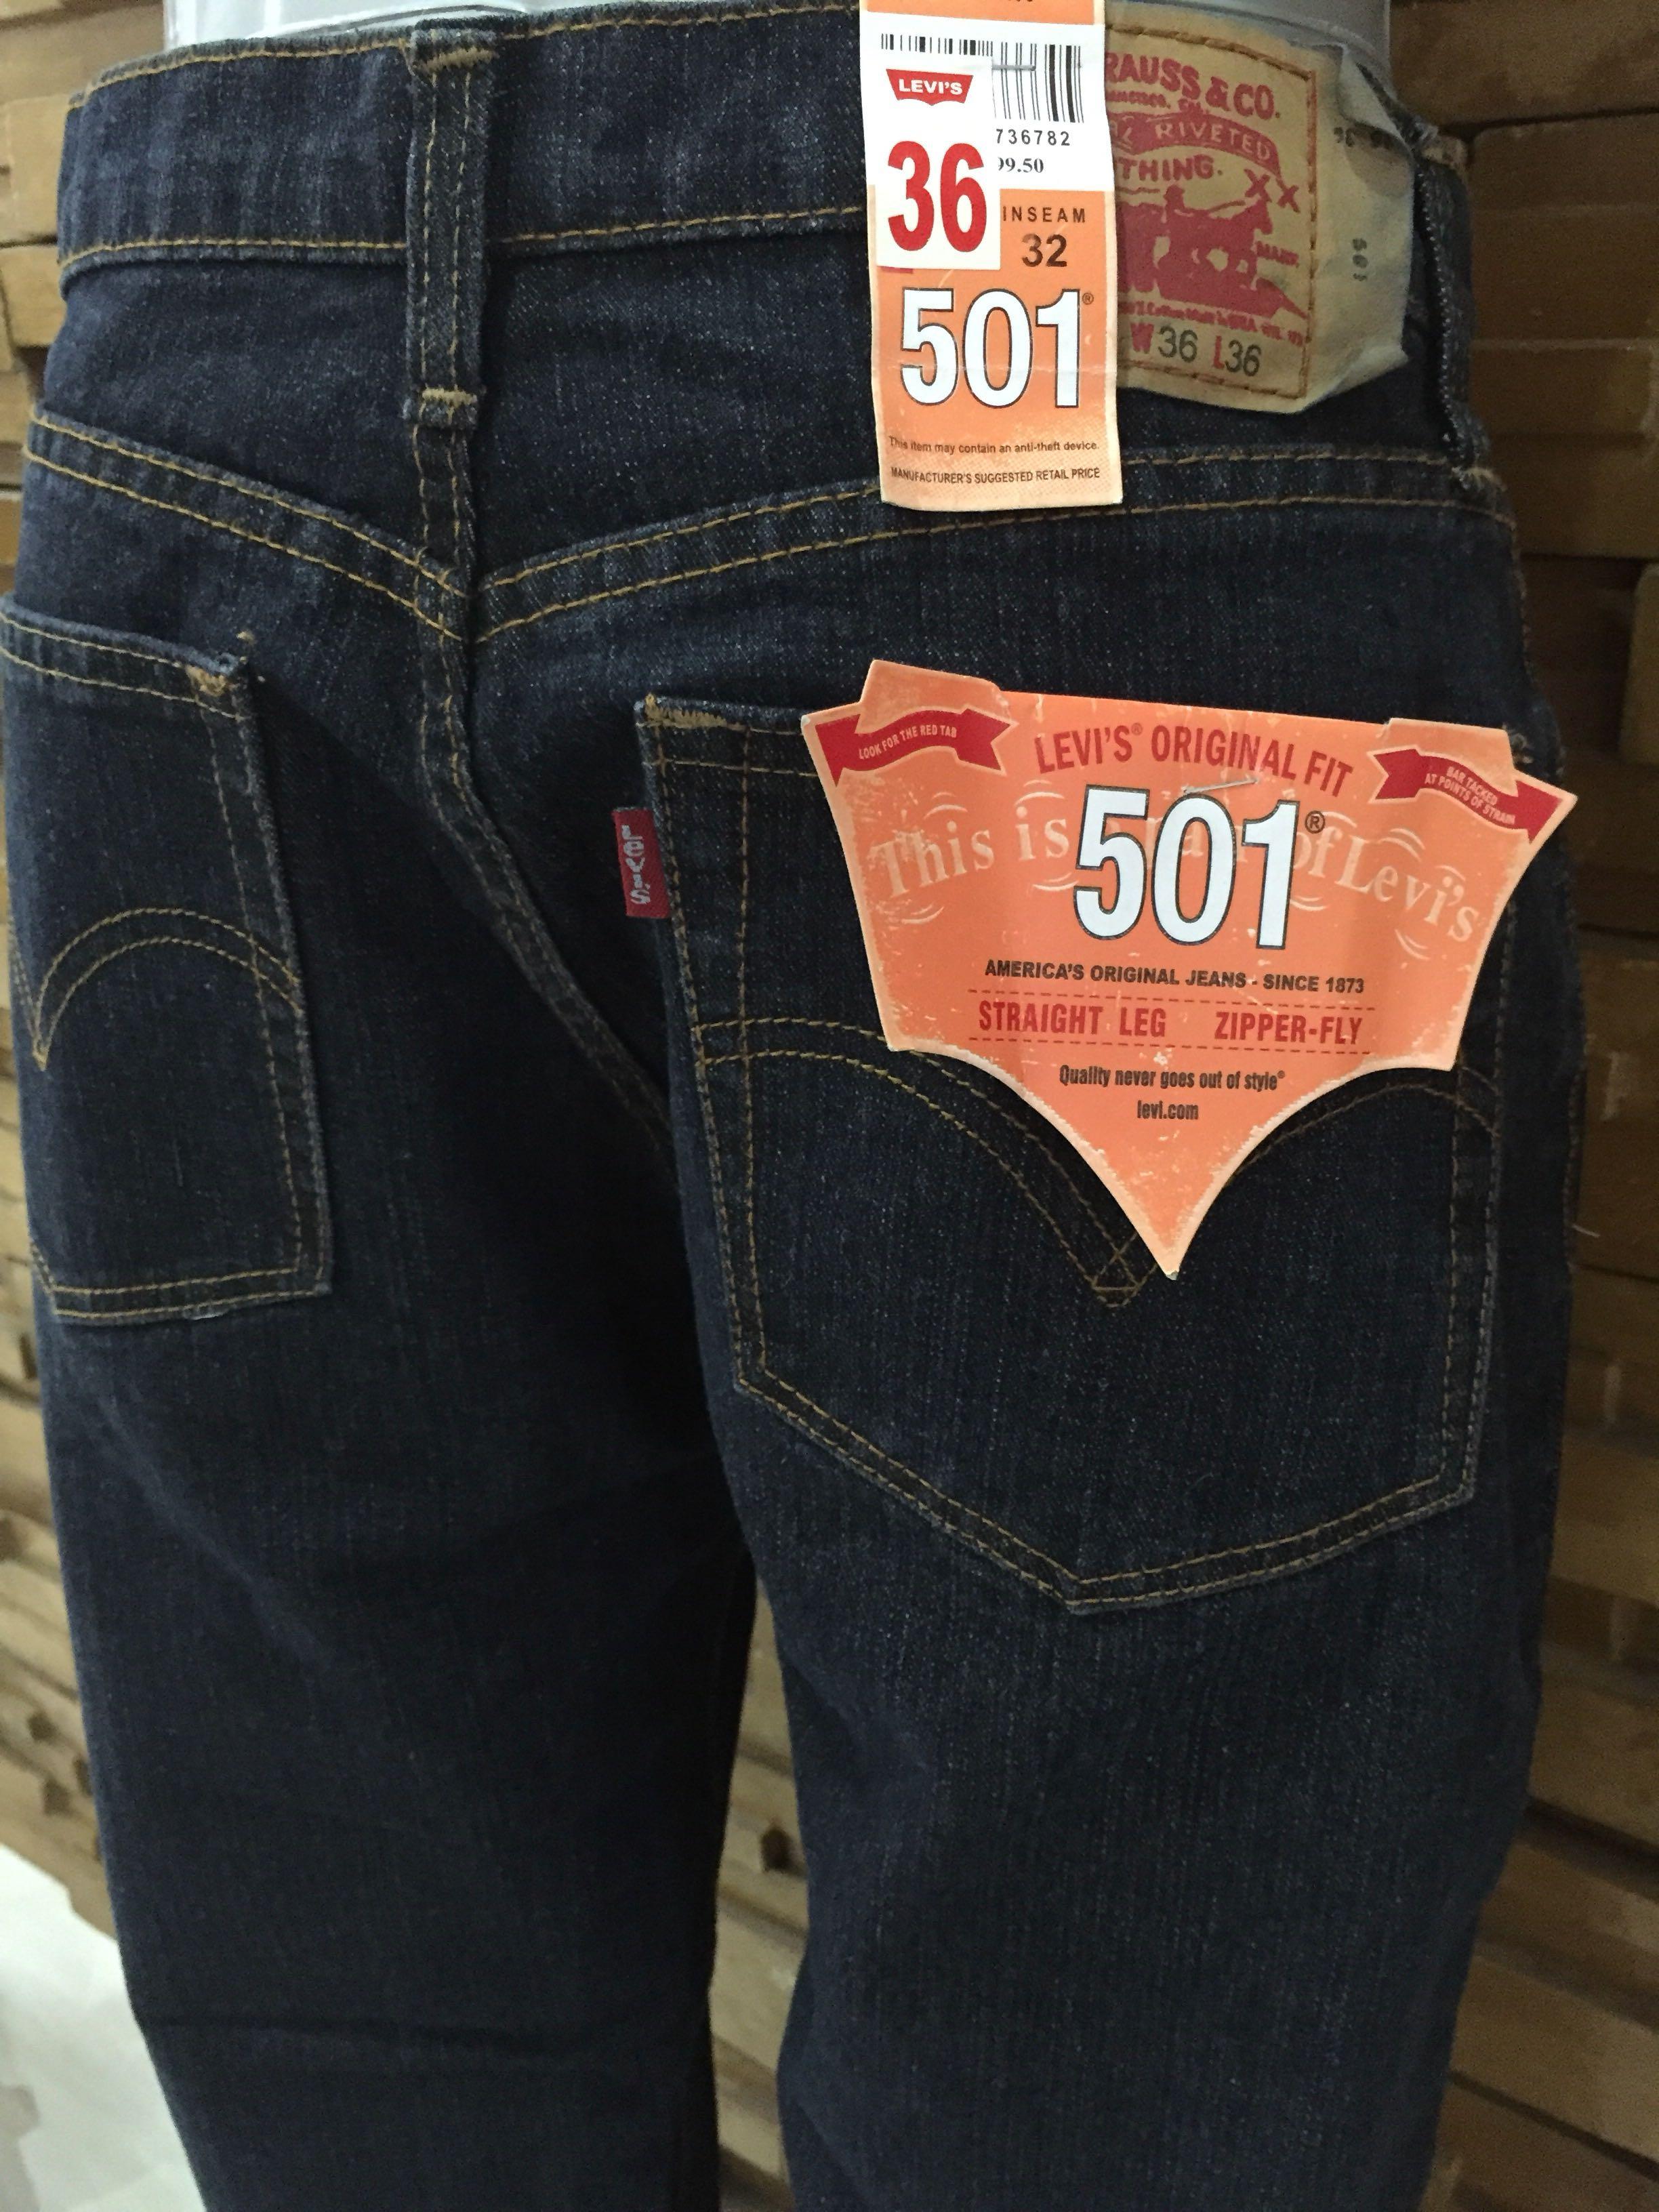 Size 36 Levi’s Men’s 501 Original Fit, Straight Leg, Zipper-Fly Jeans